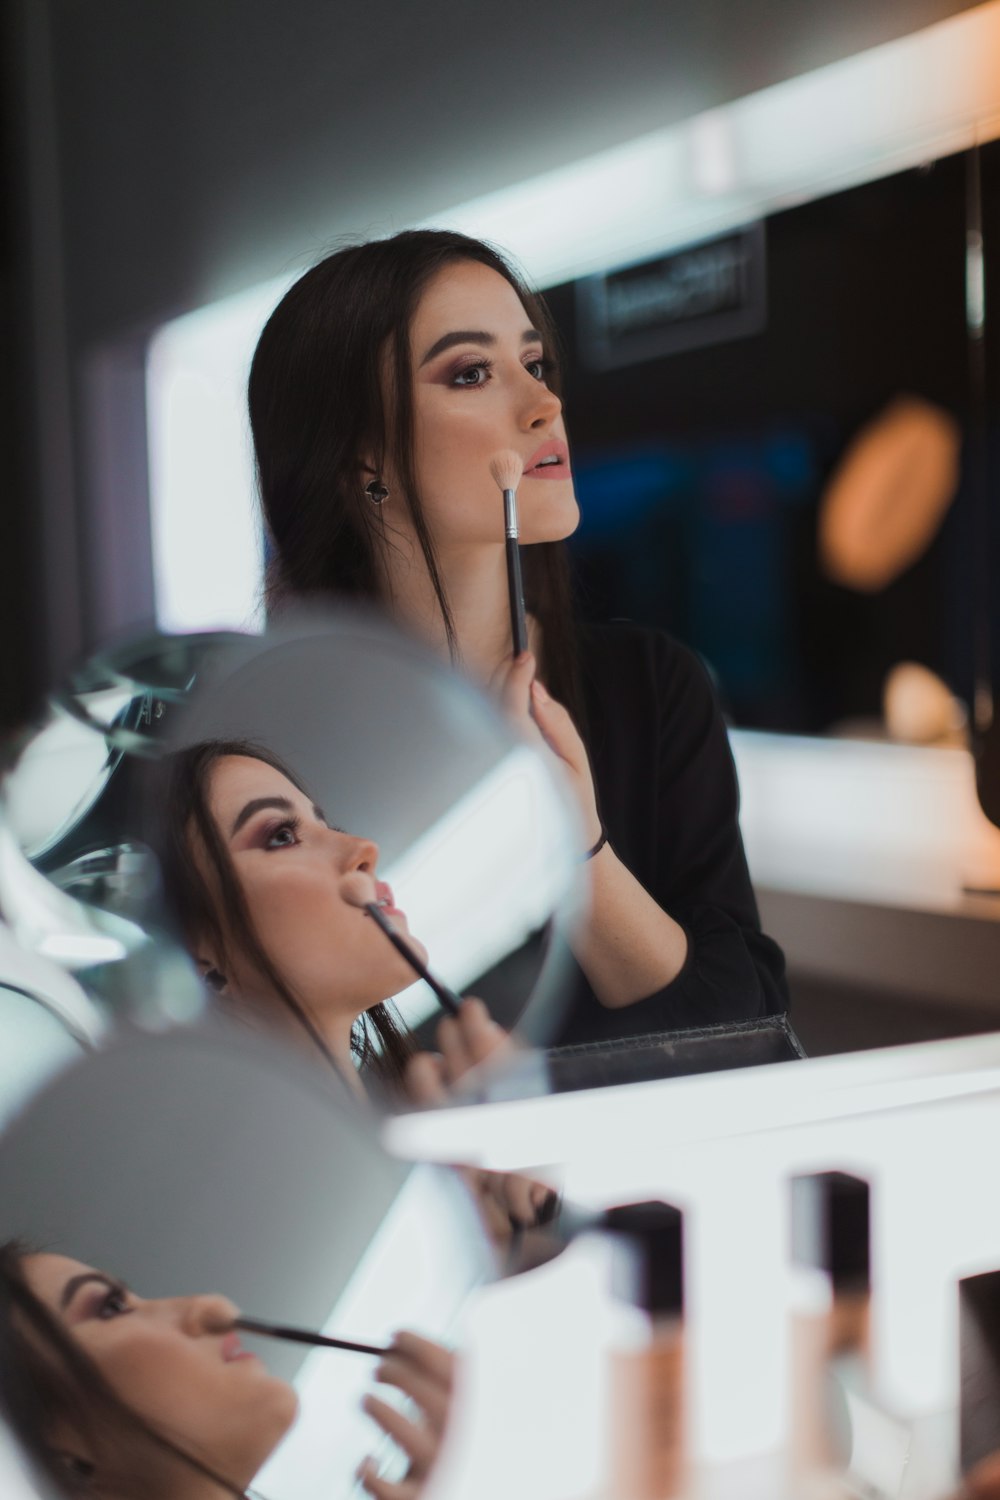 shallow focus photography of woman doing makeup